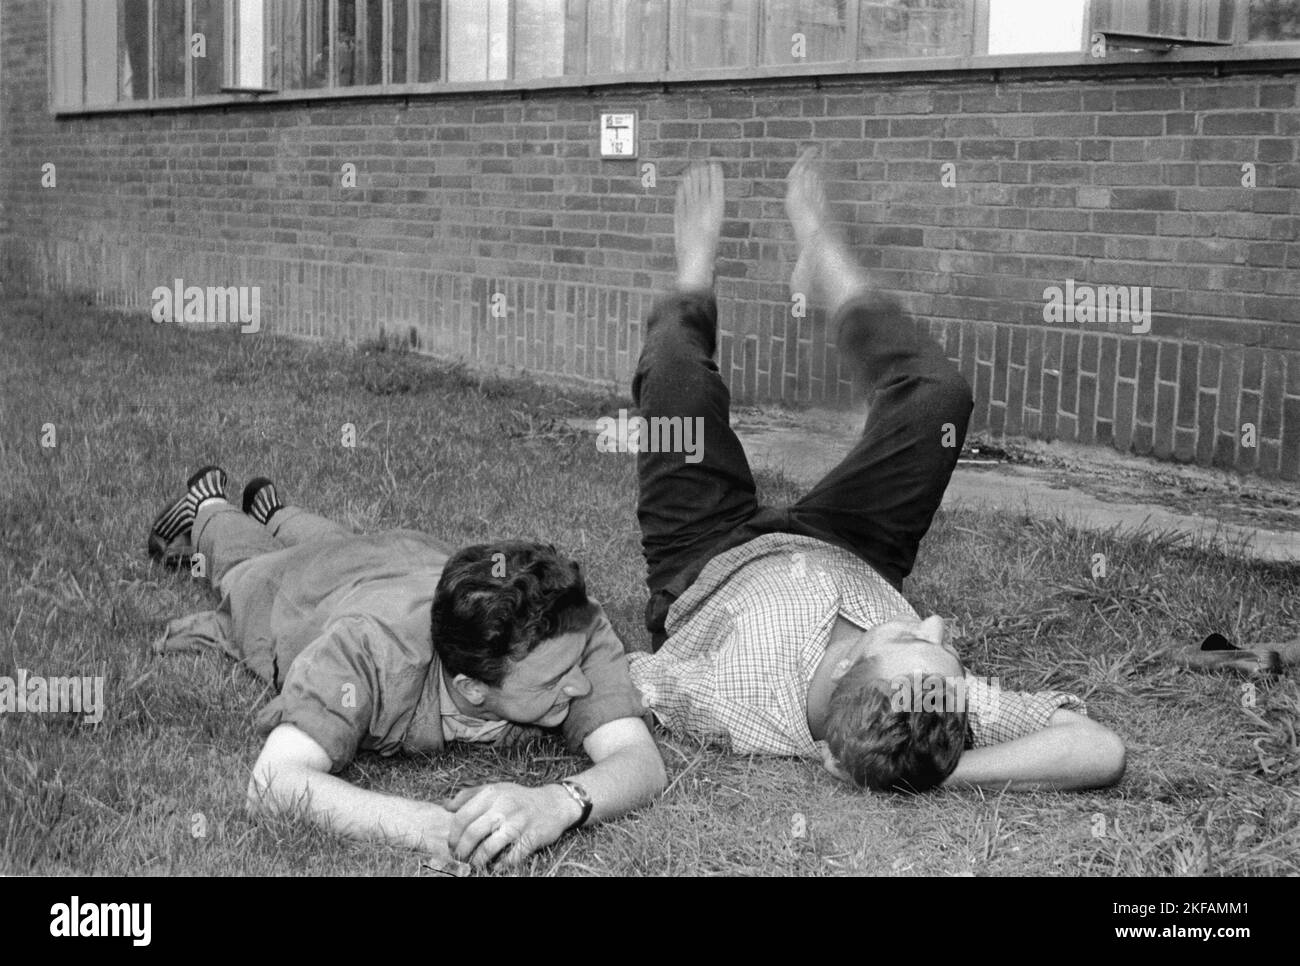 Arbeiter liegend auf dem Rasen während einer Pause am VW Werk in Wolfsburg, Deutschland 1962. Lavoratori che si trovano sull'erba durante una pausa nello stabilimento VW di Wolfsburg, Germania 1962. Foto Stock